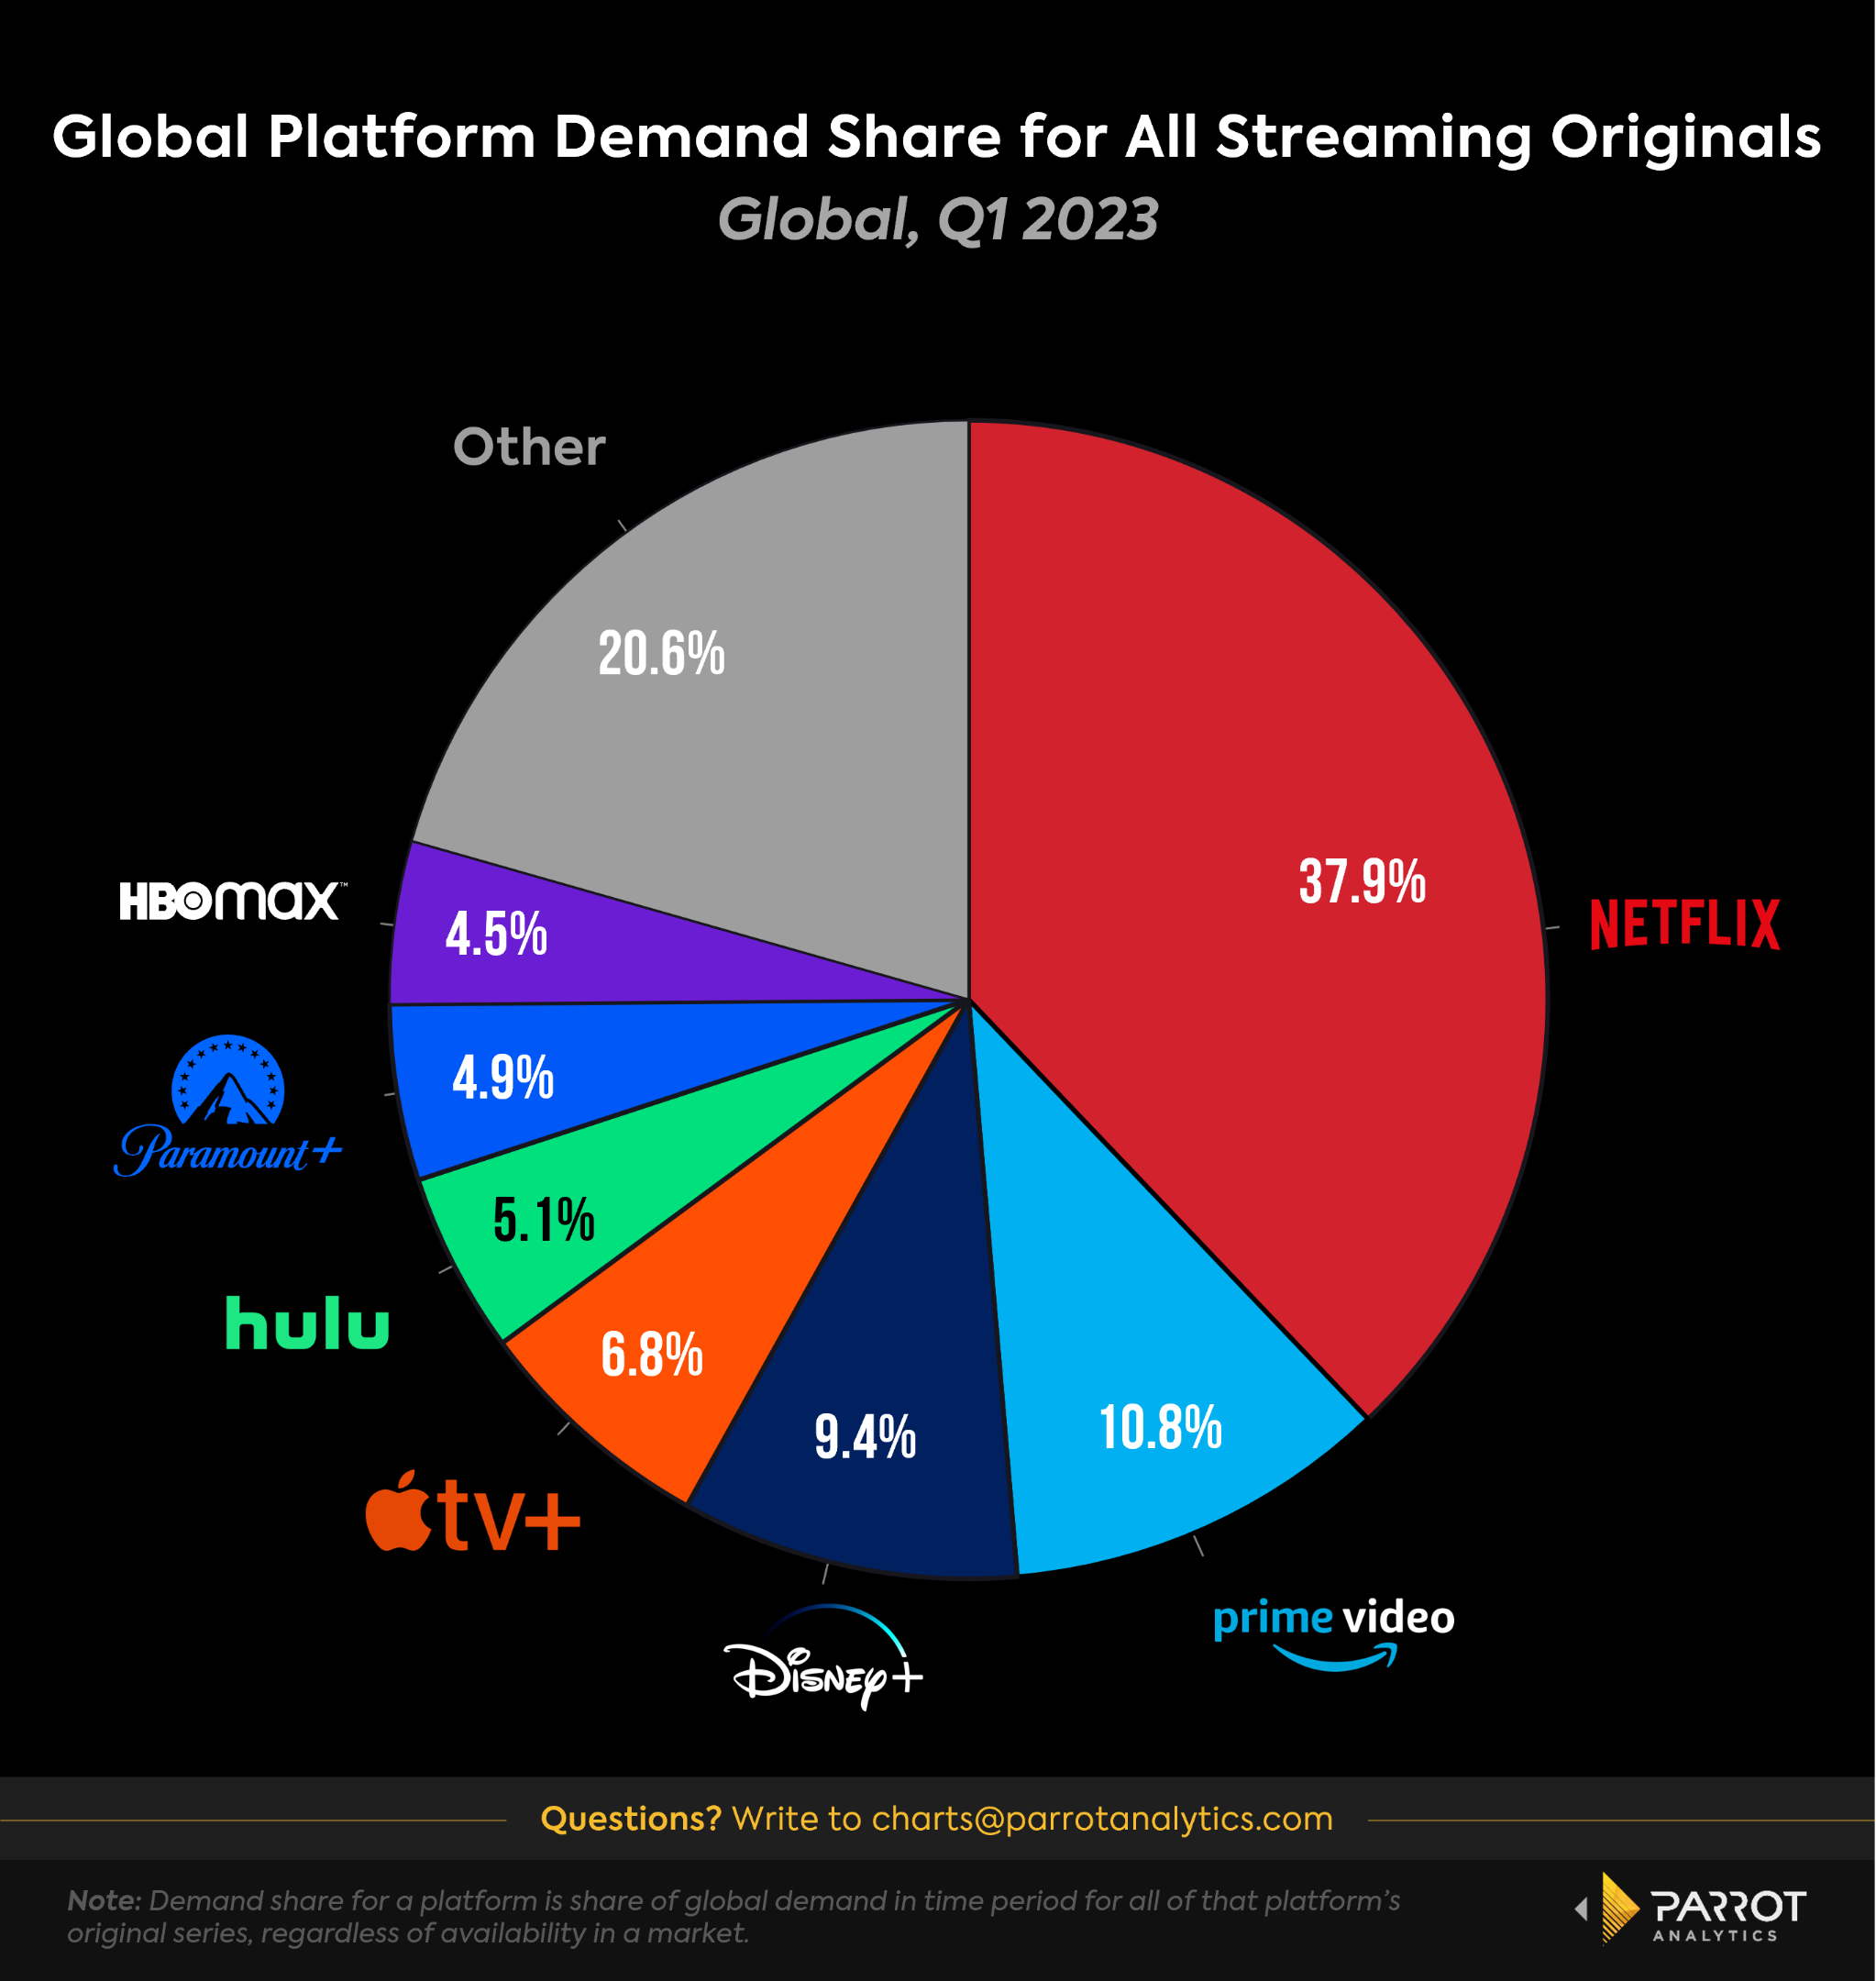 Un gráfico circular que muestra la cuota de demanda global de originales entre los servicios de streaming del mundo